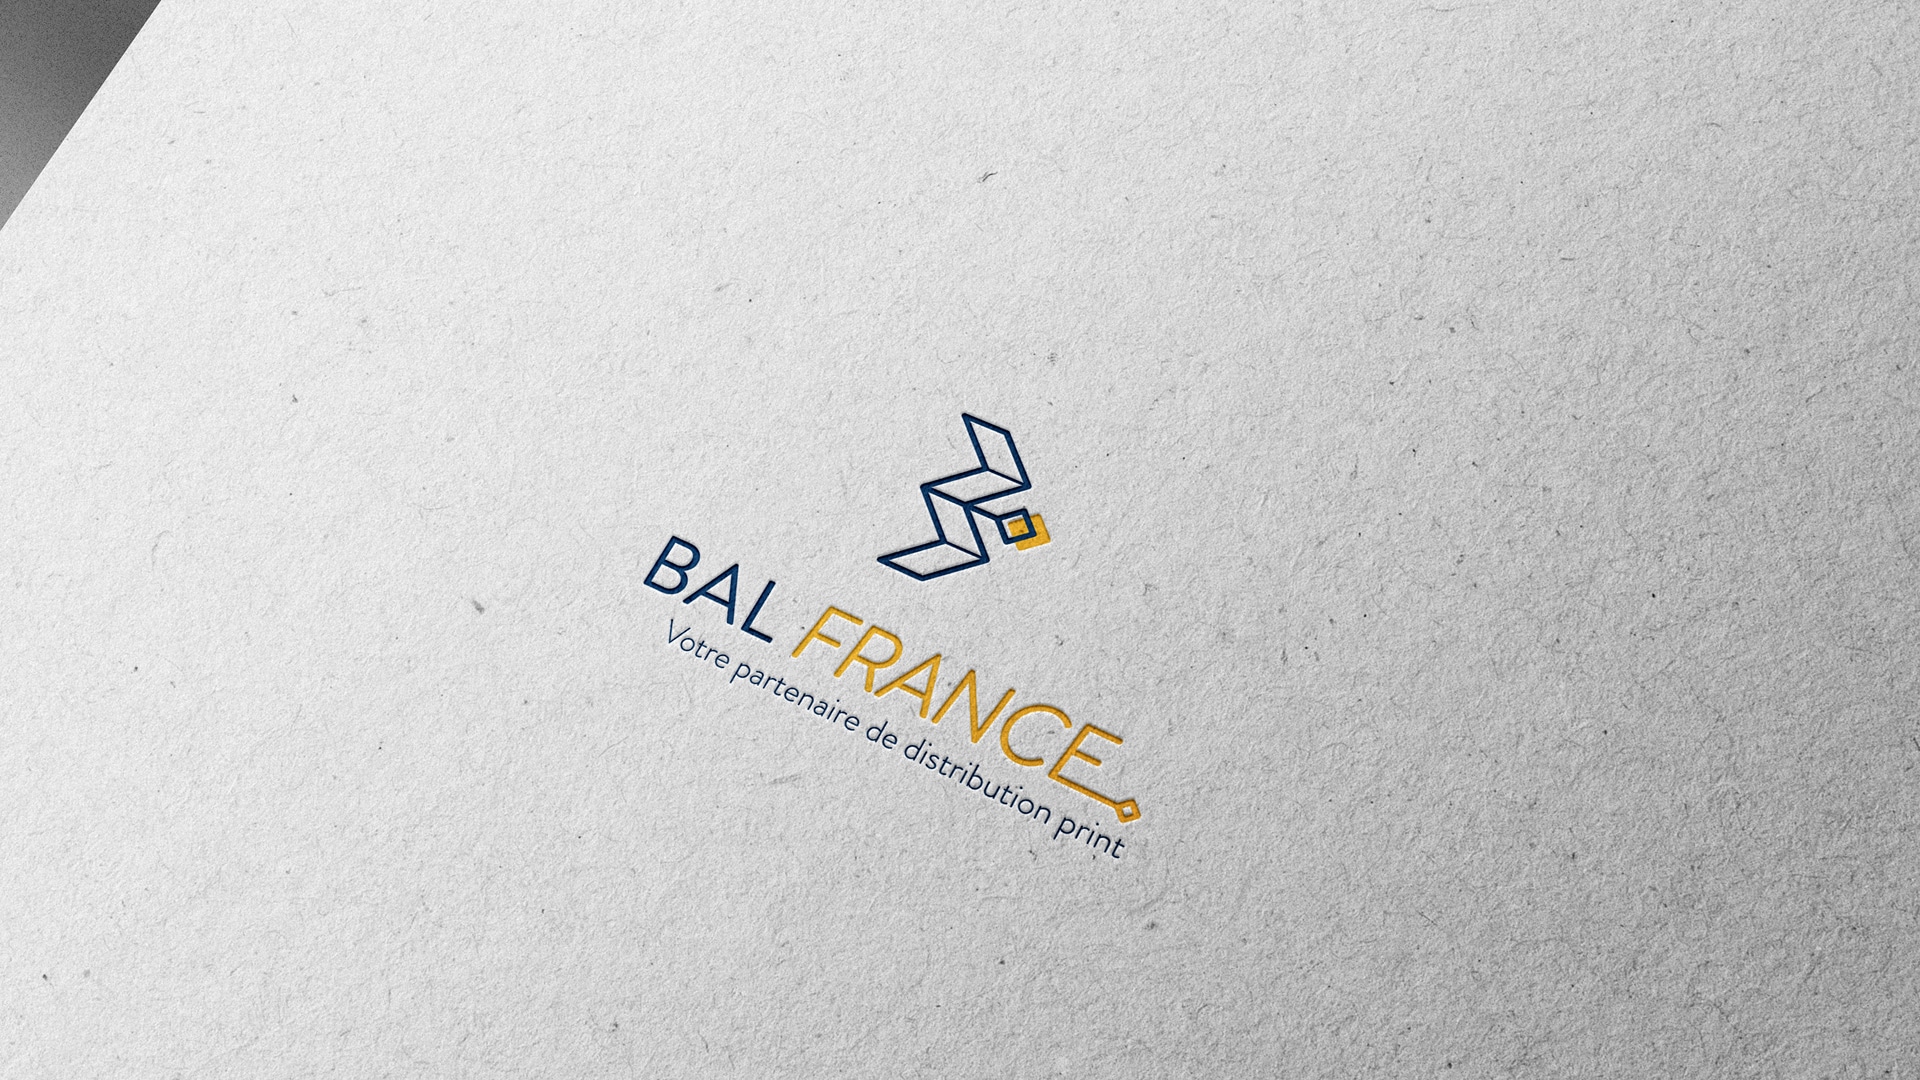 NRV Toulouse réinvente l'identité visuelle de Bal France : création d'un nouveau logo, charte graphique moderne, et supports de communication innovants pour une visibilité renforcée